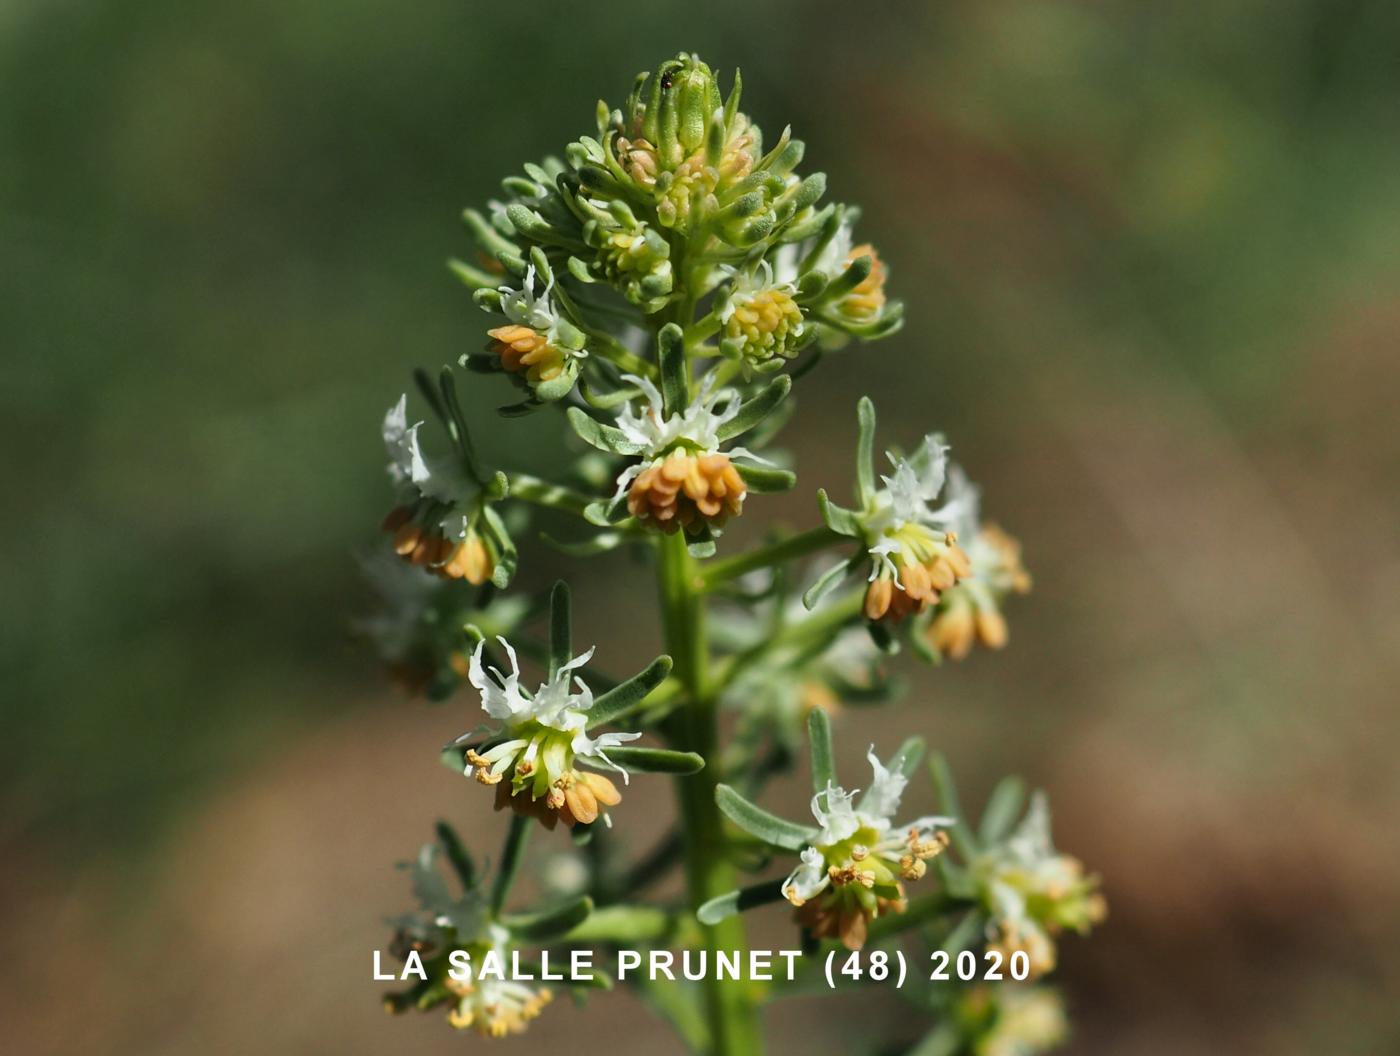 Mignonette of Jacquin flower